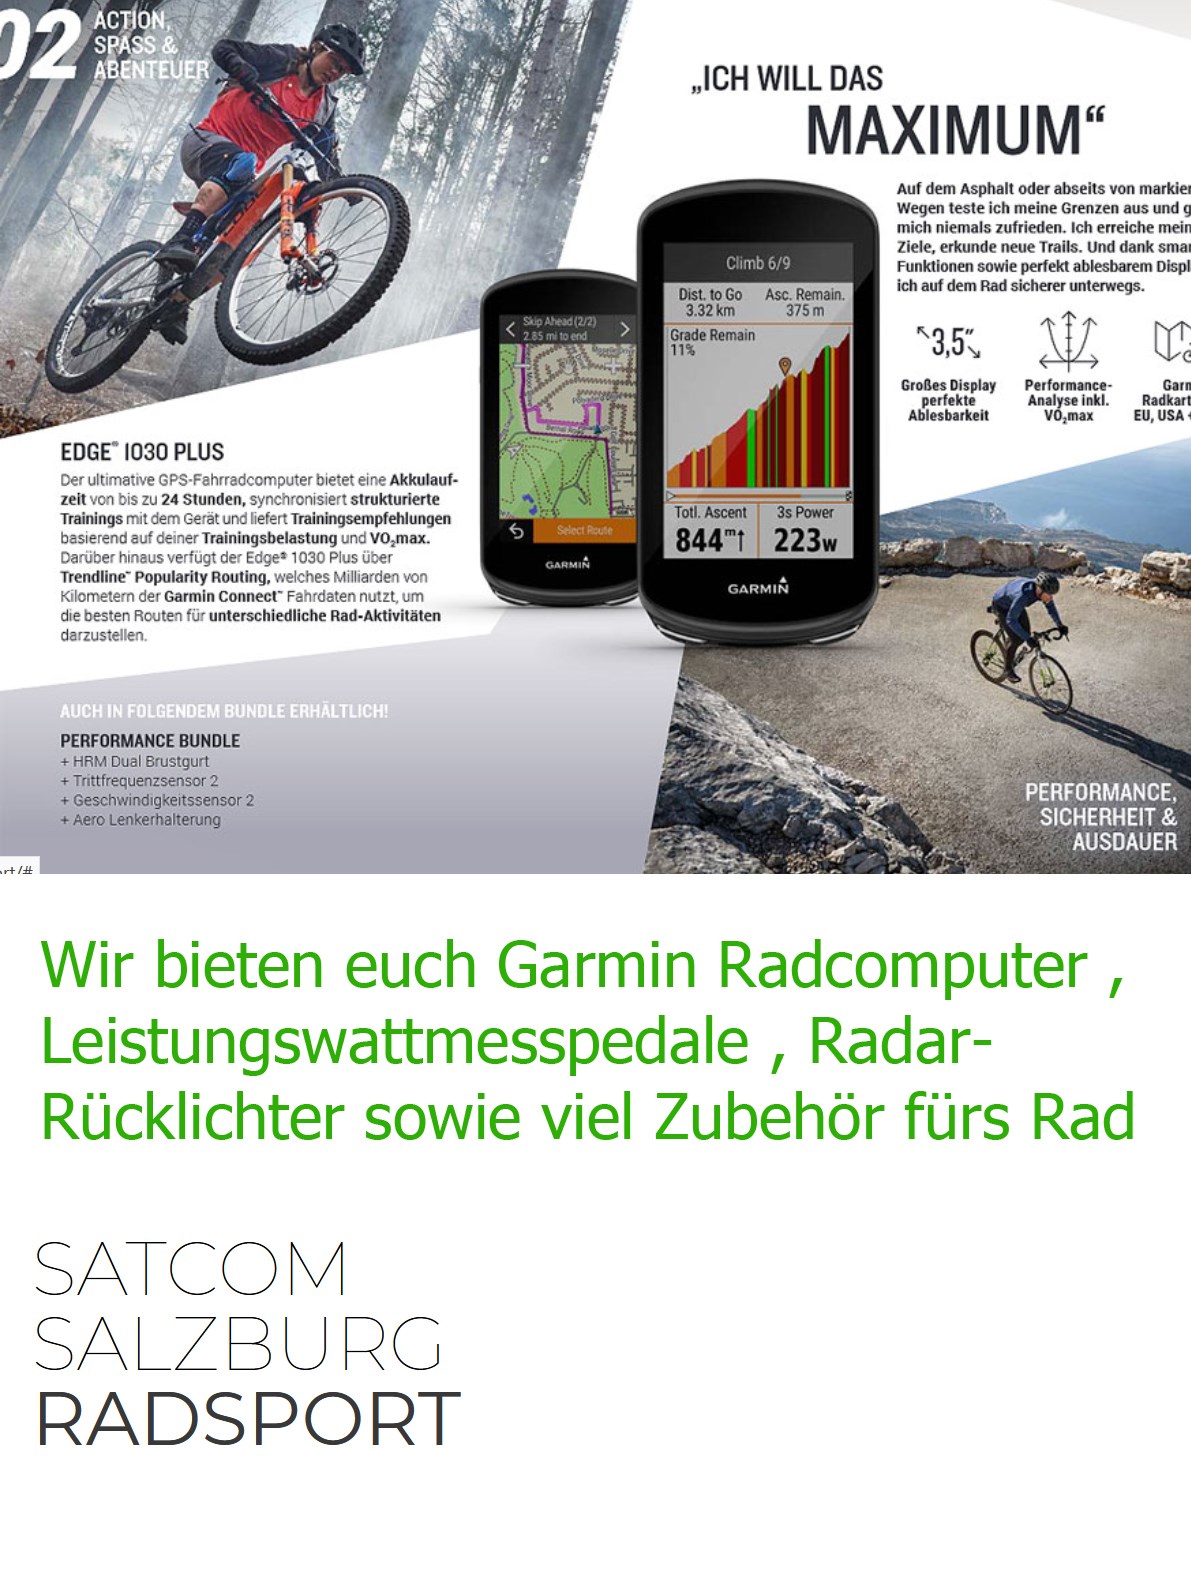 satcom  - Garmin Shop Salzburg Produkt-Beispiele Radnavigation + Zubehör